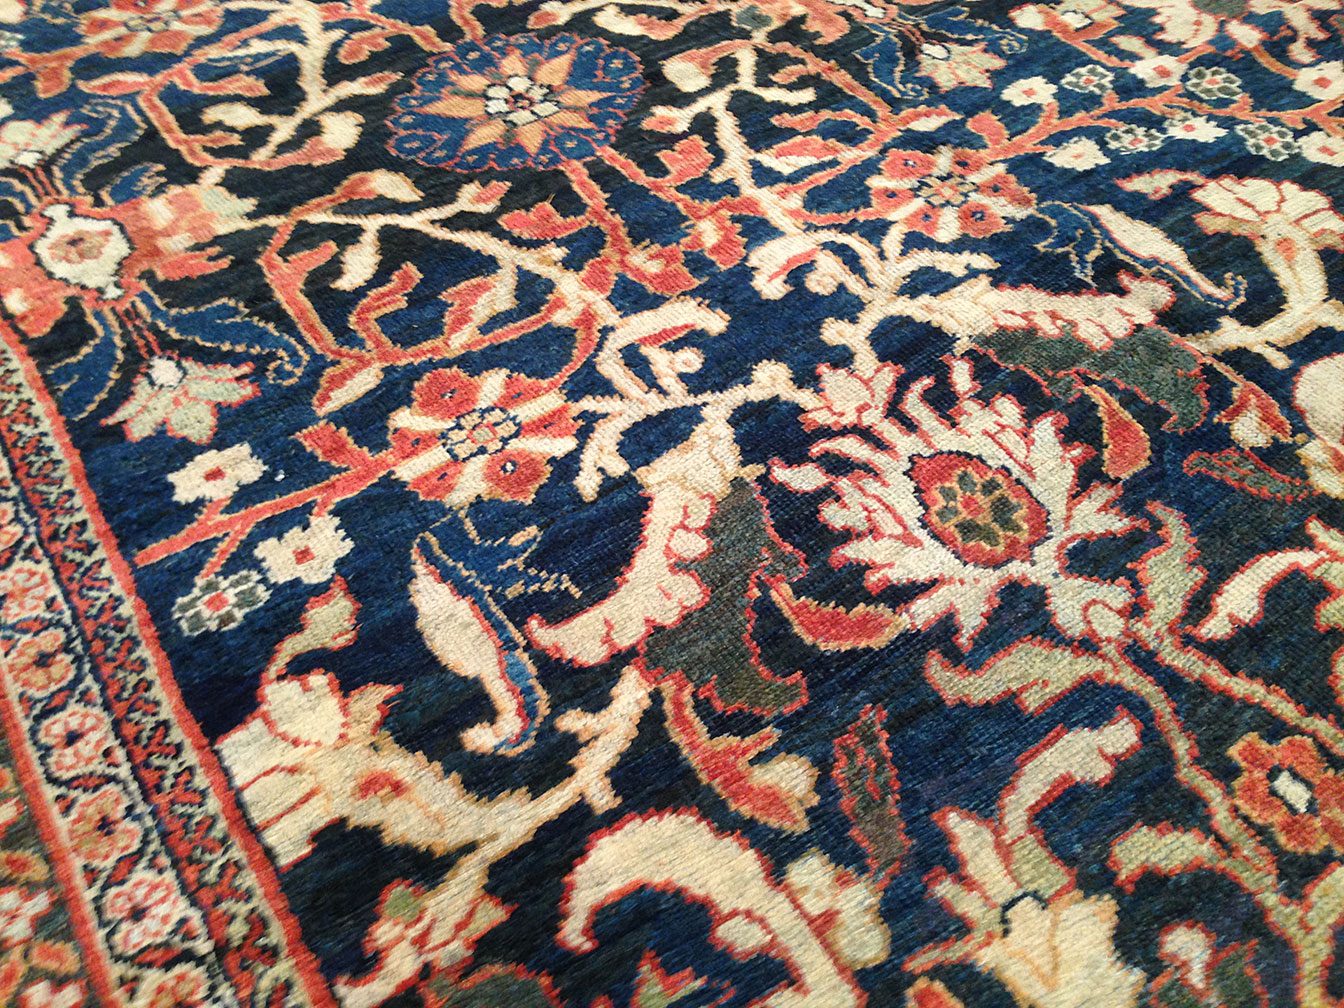 Antique sultan abad Carpet - # 50700